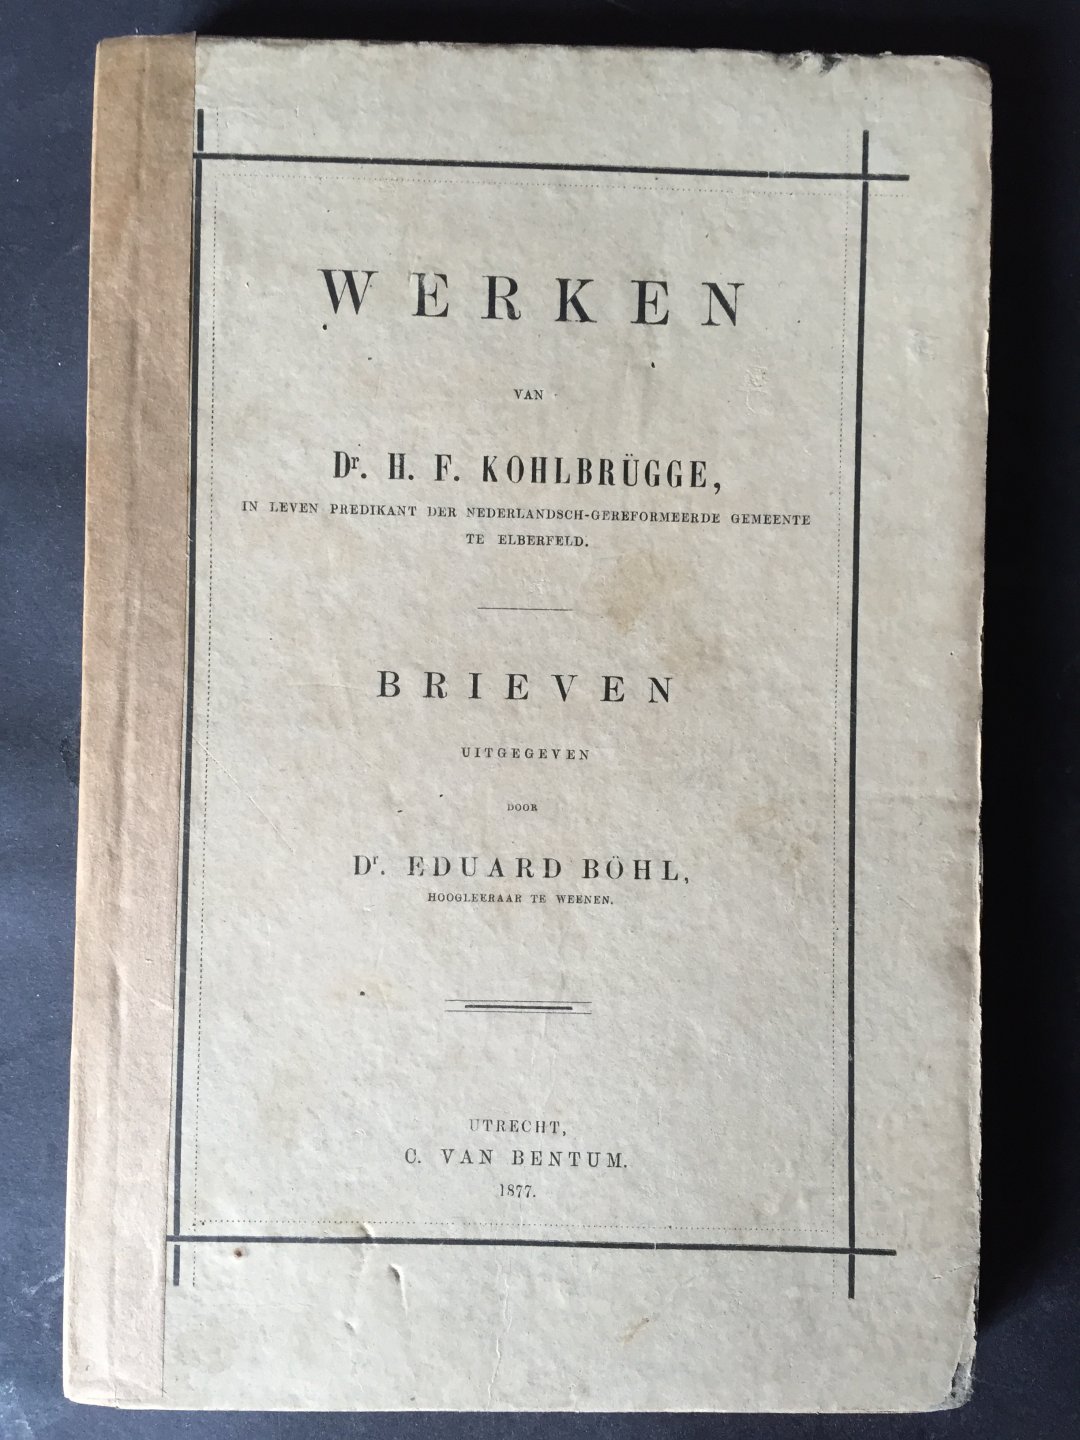 Kohlbrugge, Dr. H.F. - Brieven uitgegeven door Dr. Eduard Böhl, hoogleeraar te Weenen